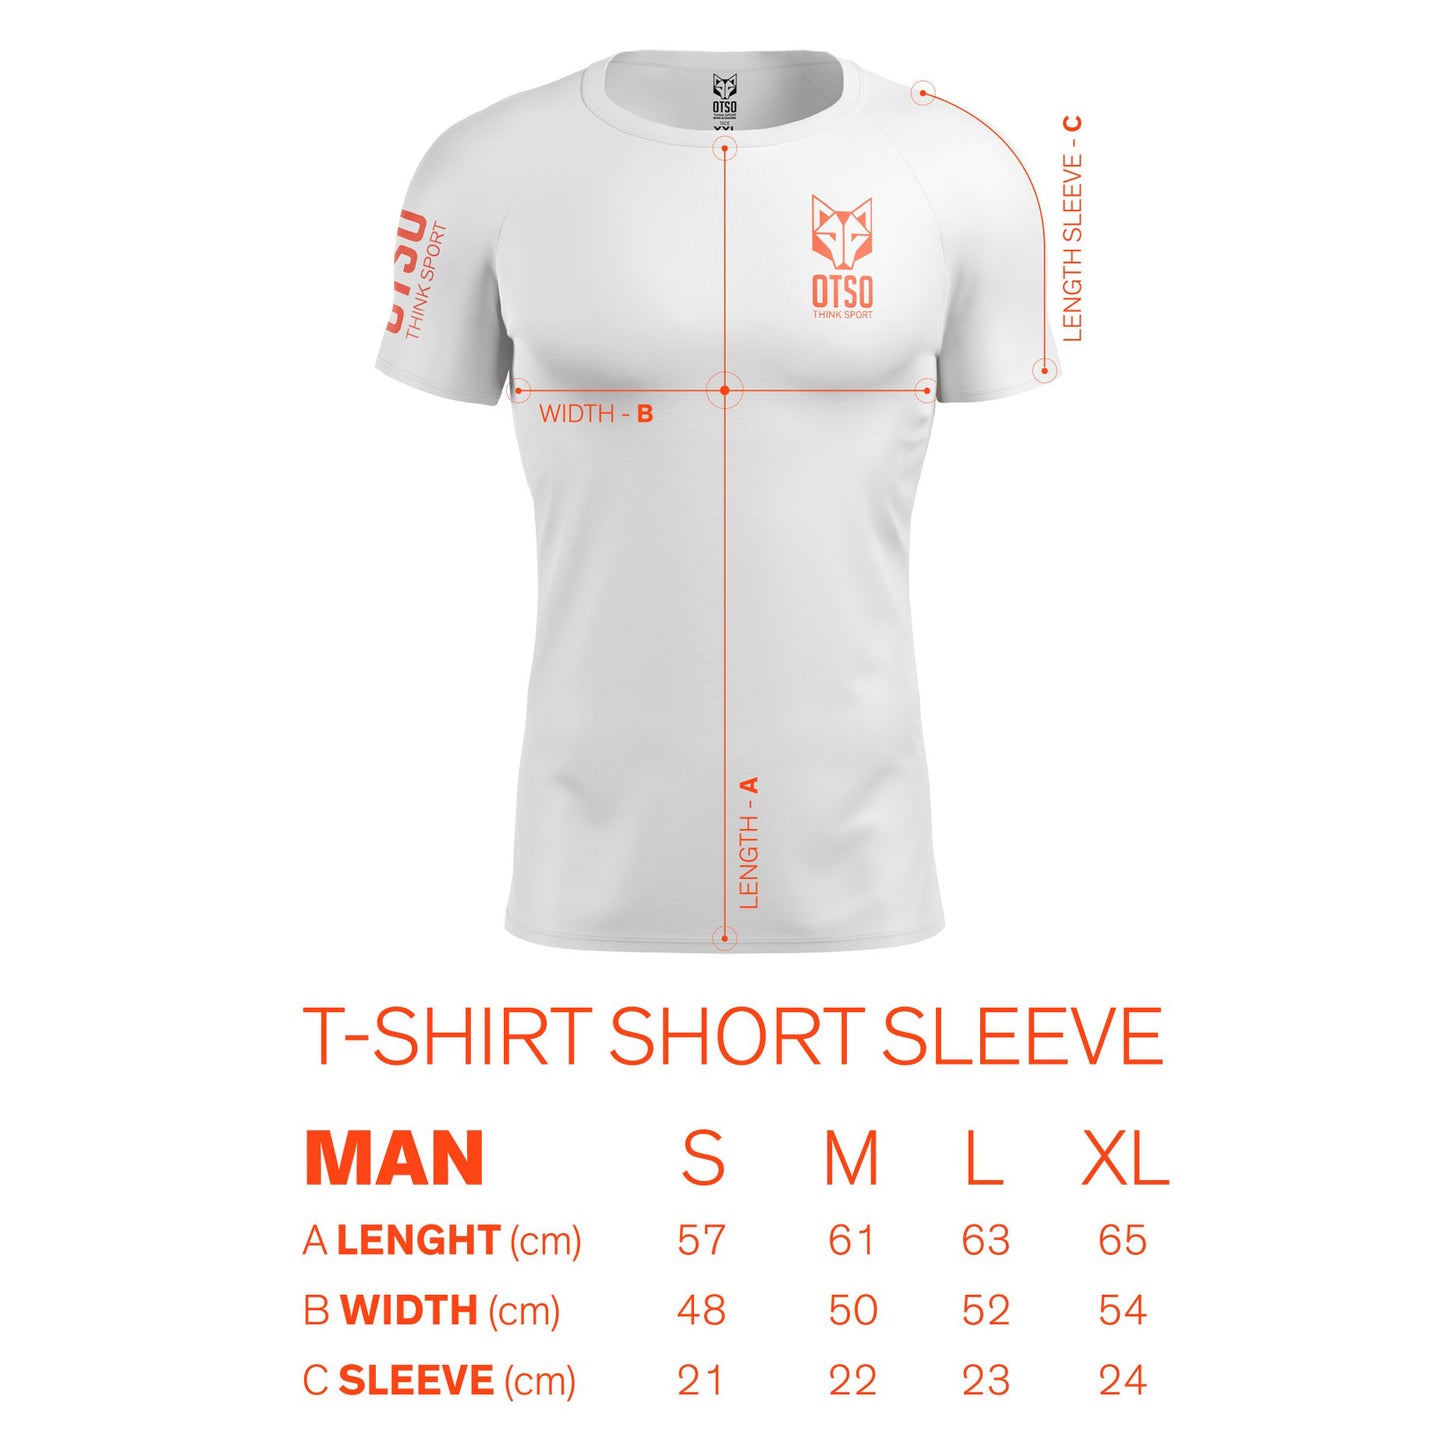 Run Copenhagen Men's Short Sleeve T-Shirt (Outlet)